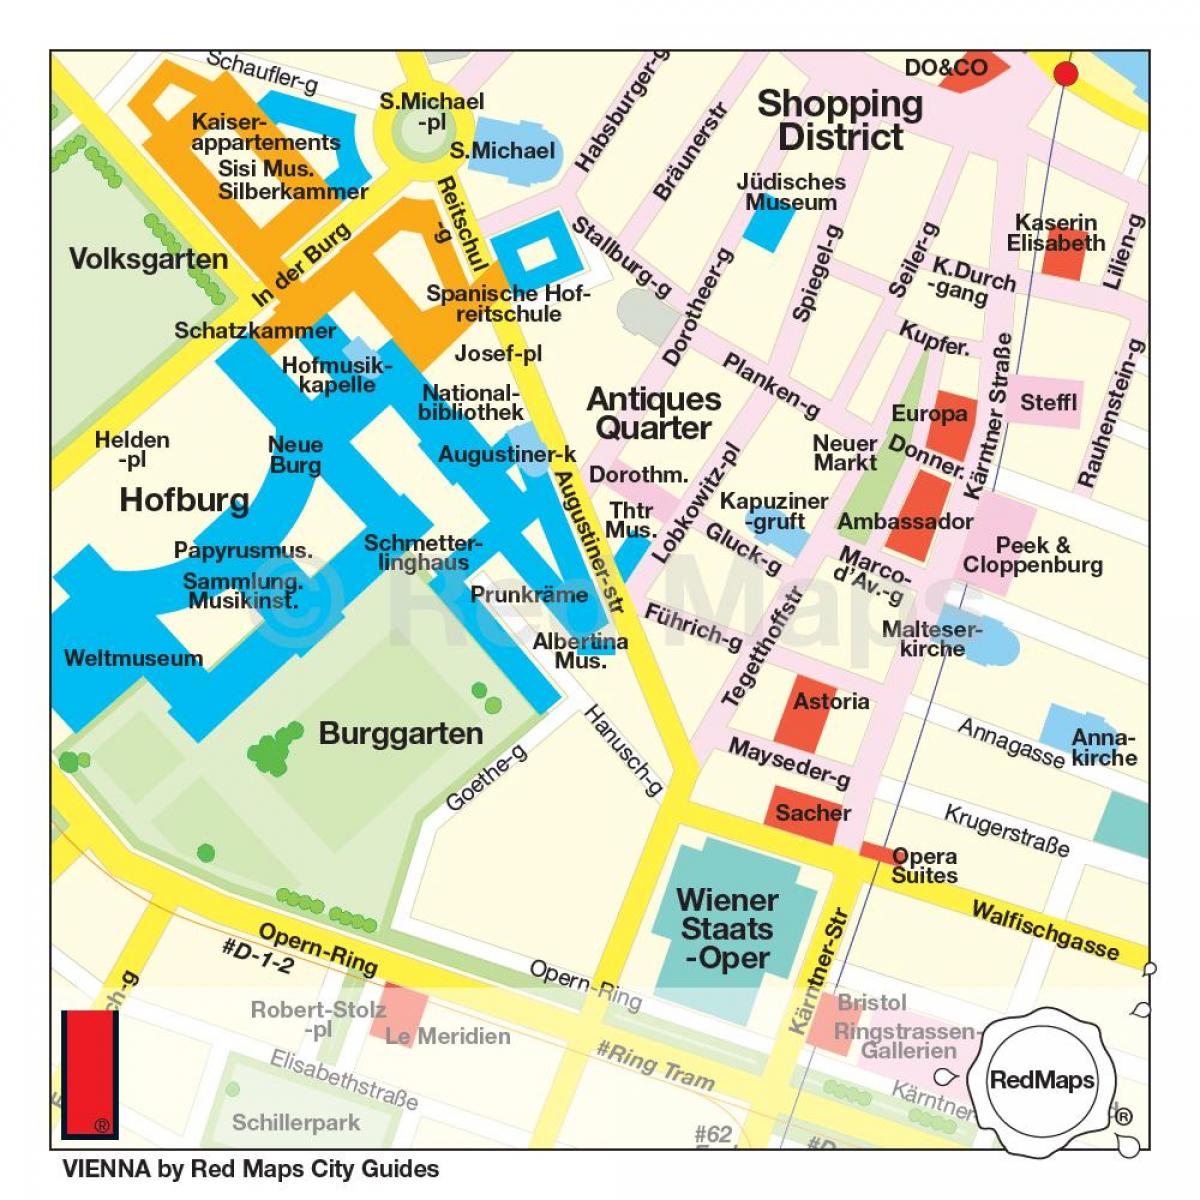 Mapa ng Vienna shopping